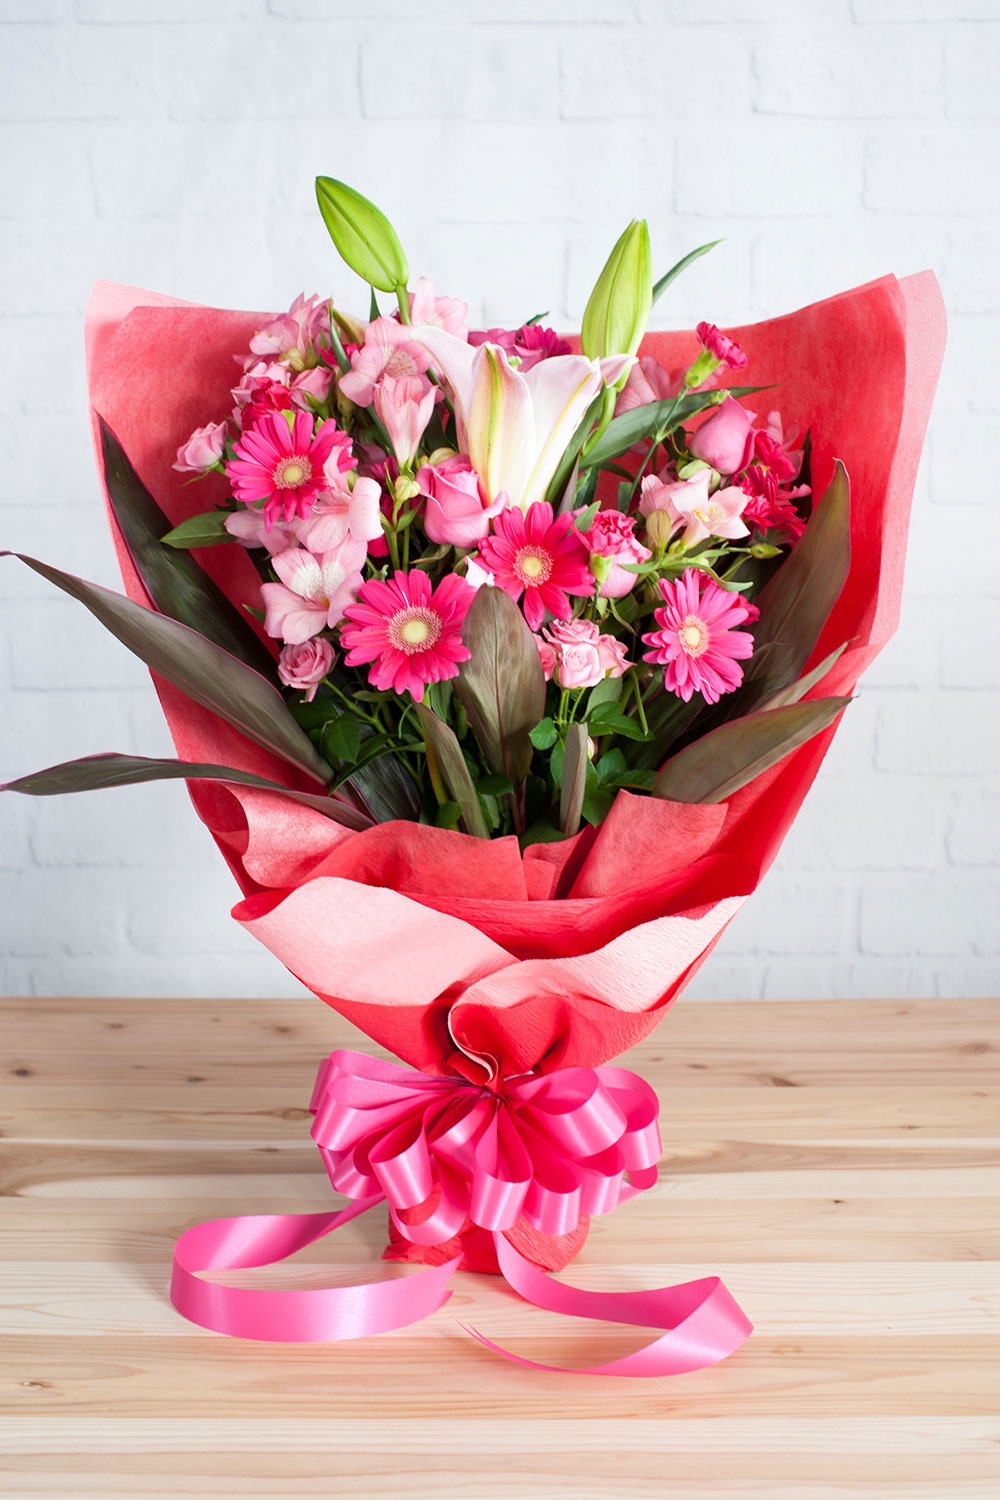 合格祝い 合格祝いを明るく彩るピンク色の花束 ラッピング付き 高さ約65cm 門出のお祝い花 個人編 お祝い お供えの花通販ギフトは送料無料の お花の窓口 へ